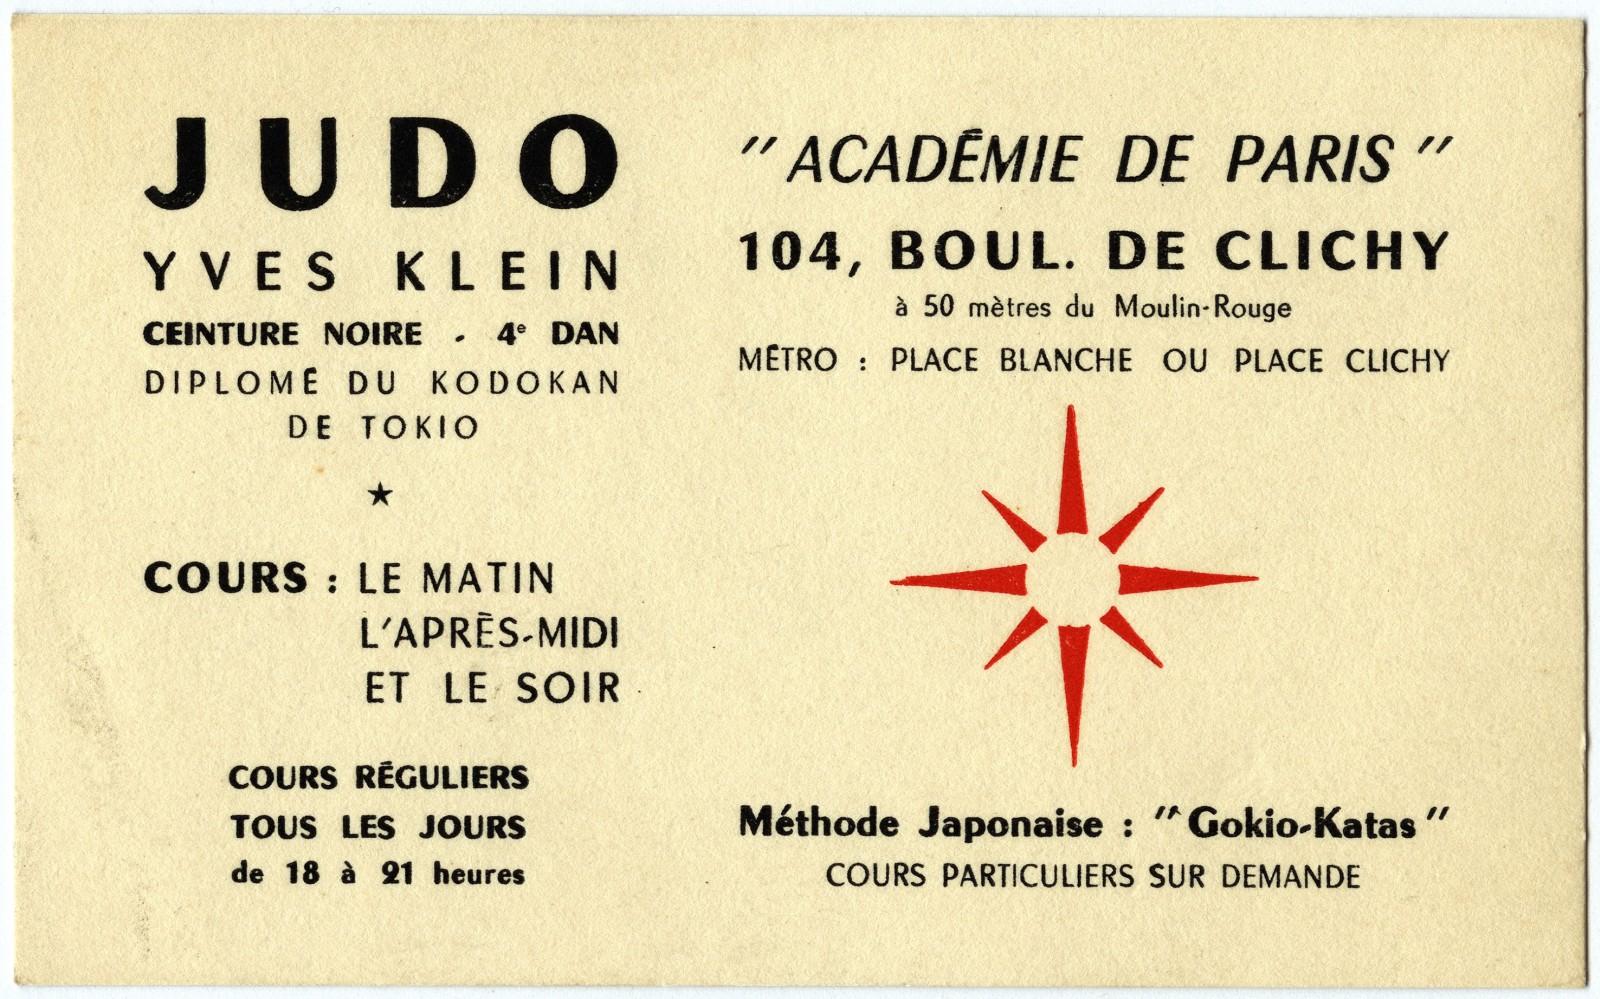 Yves Klein’s Judo Teacher Card, Paris Academy, 104 Boulevard de Clichy, Paris